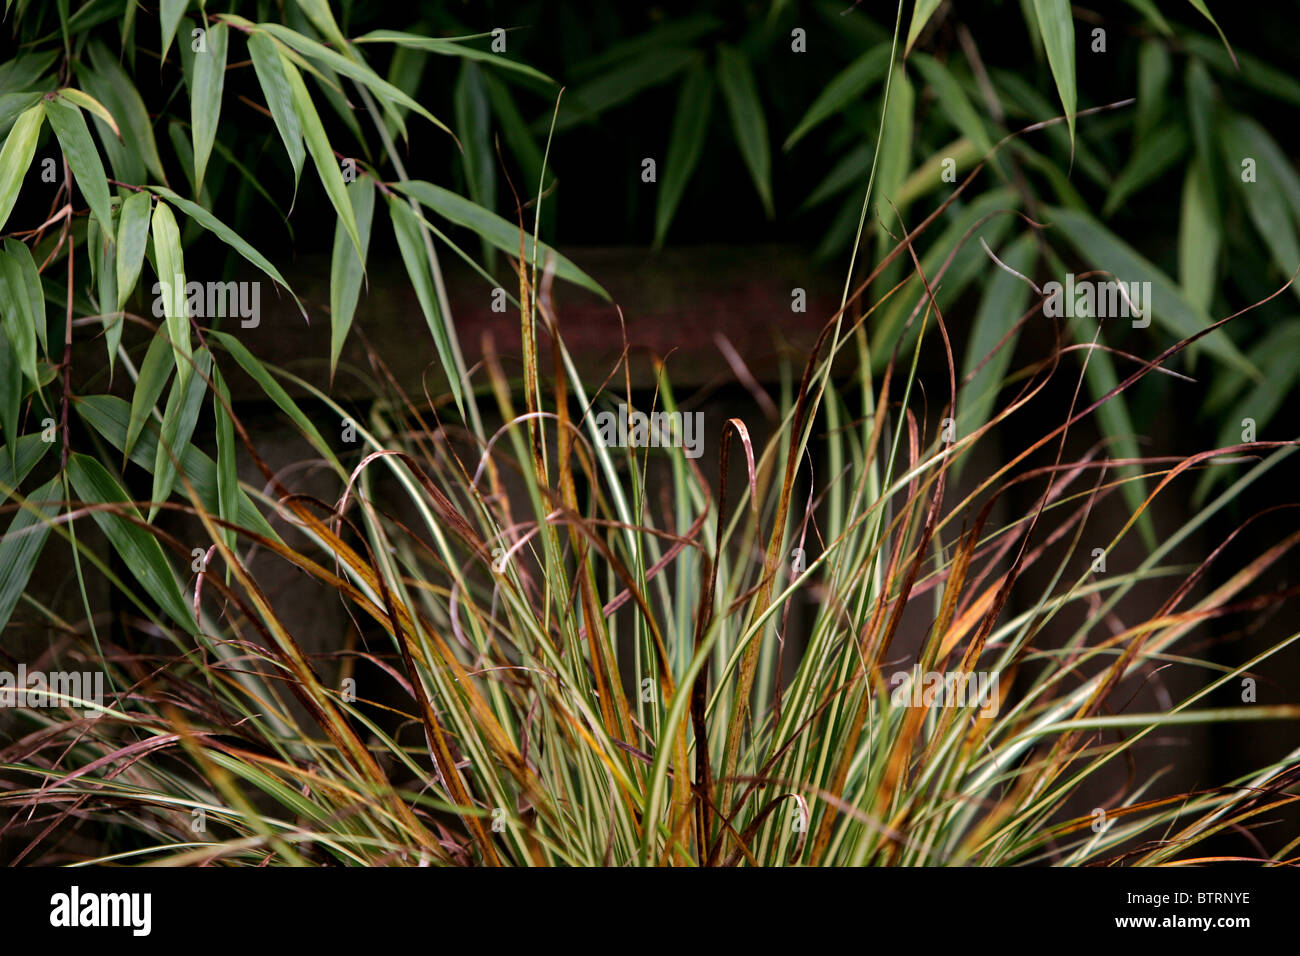 Carex hierba "Evergold" y bambú Fargesia murieliae 'Simba' Foto de stock